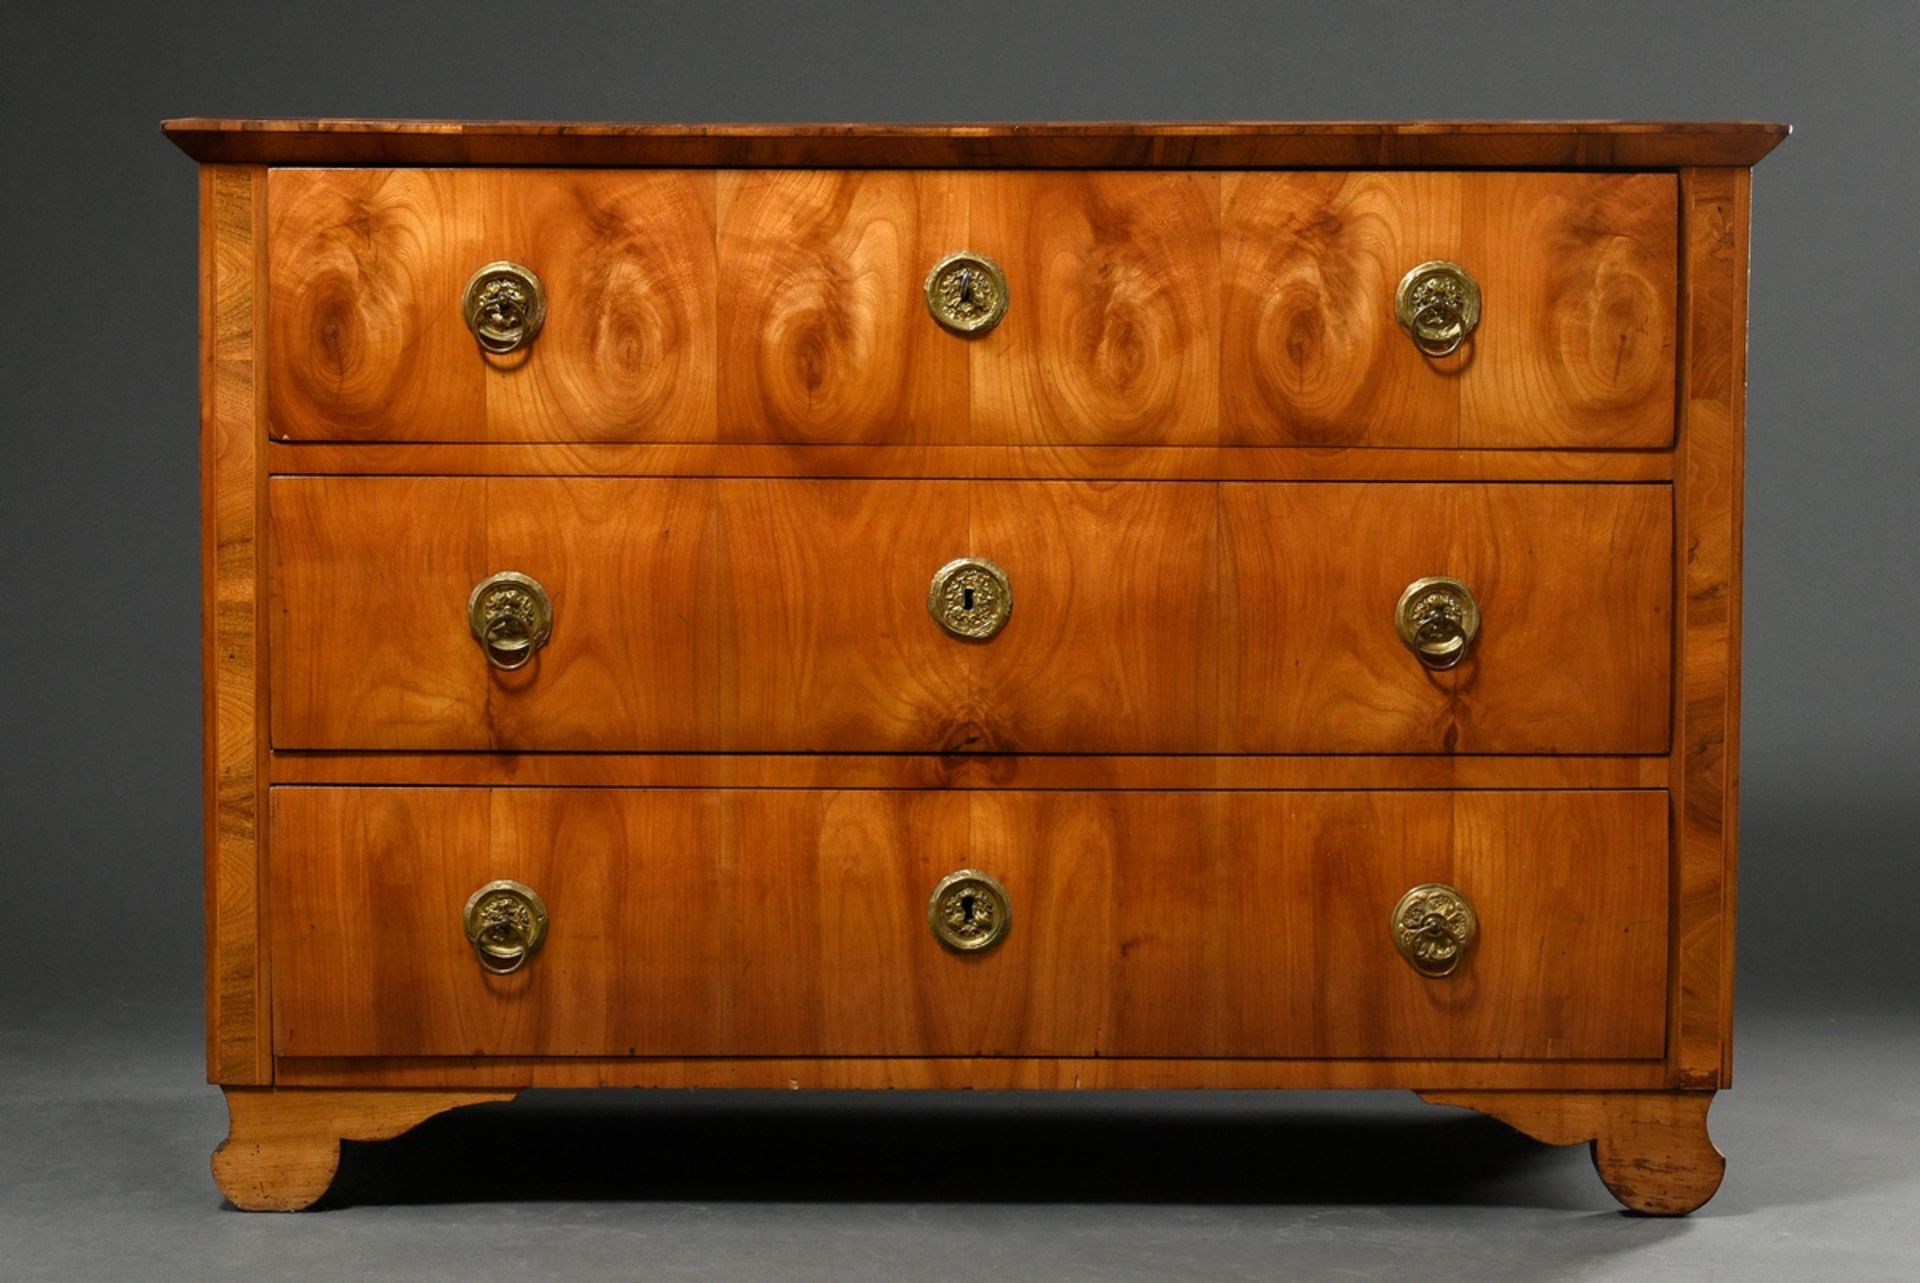 Southern German Biedermeier chest of drawers in simple façon, cherry veneered on softwood, original